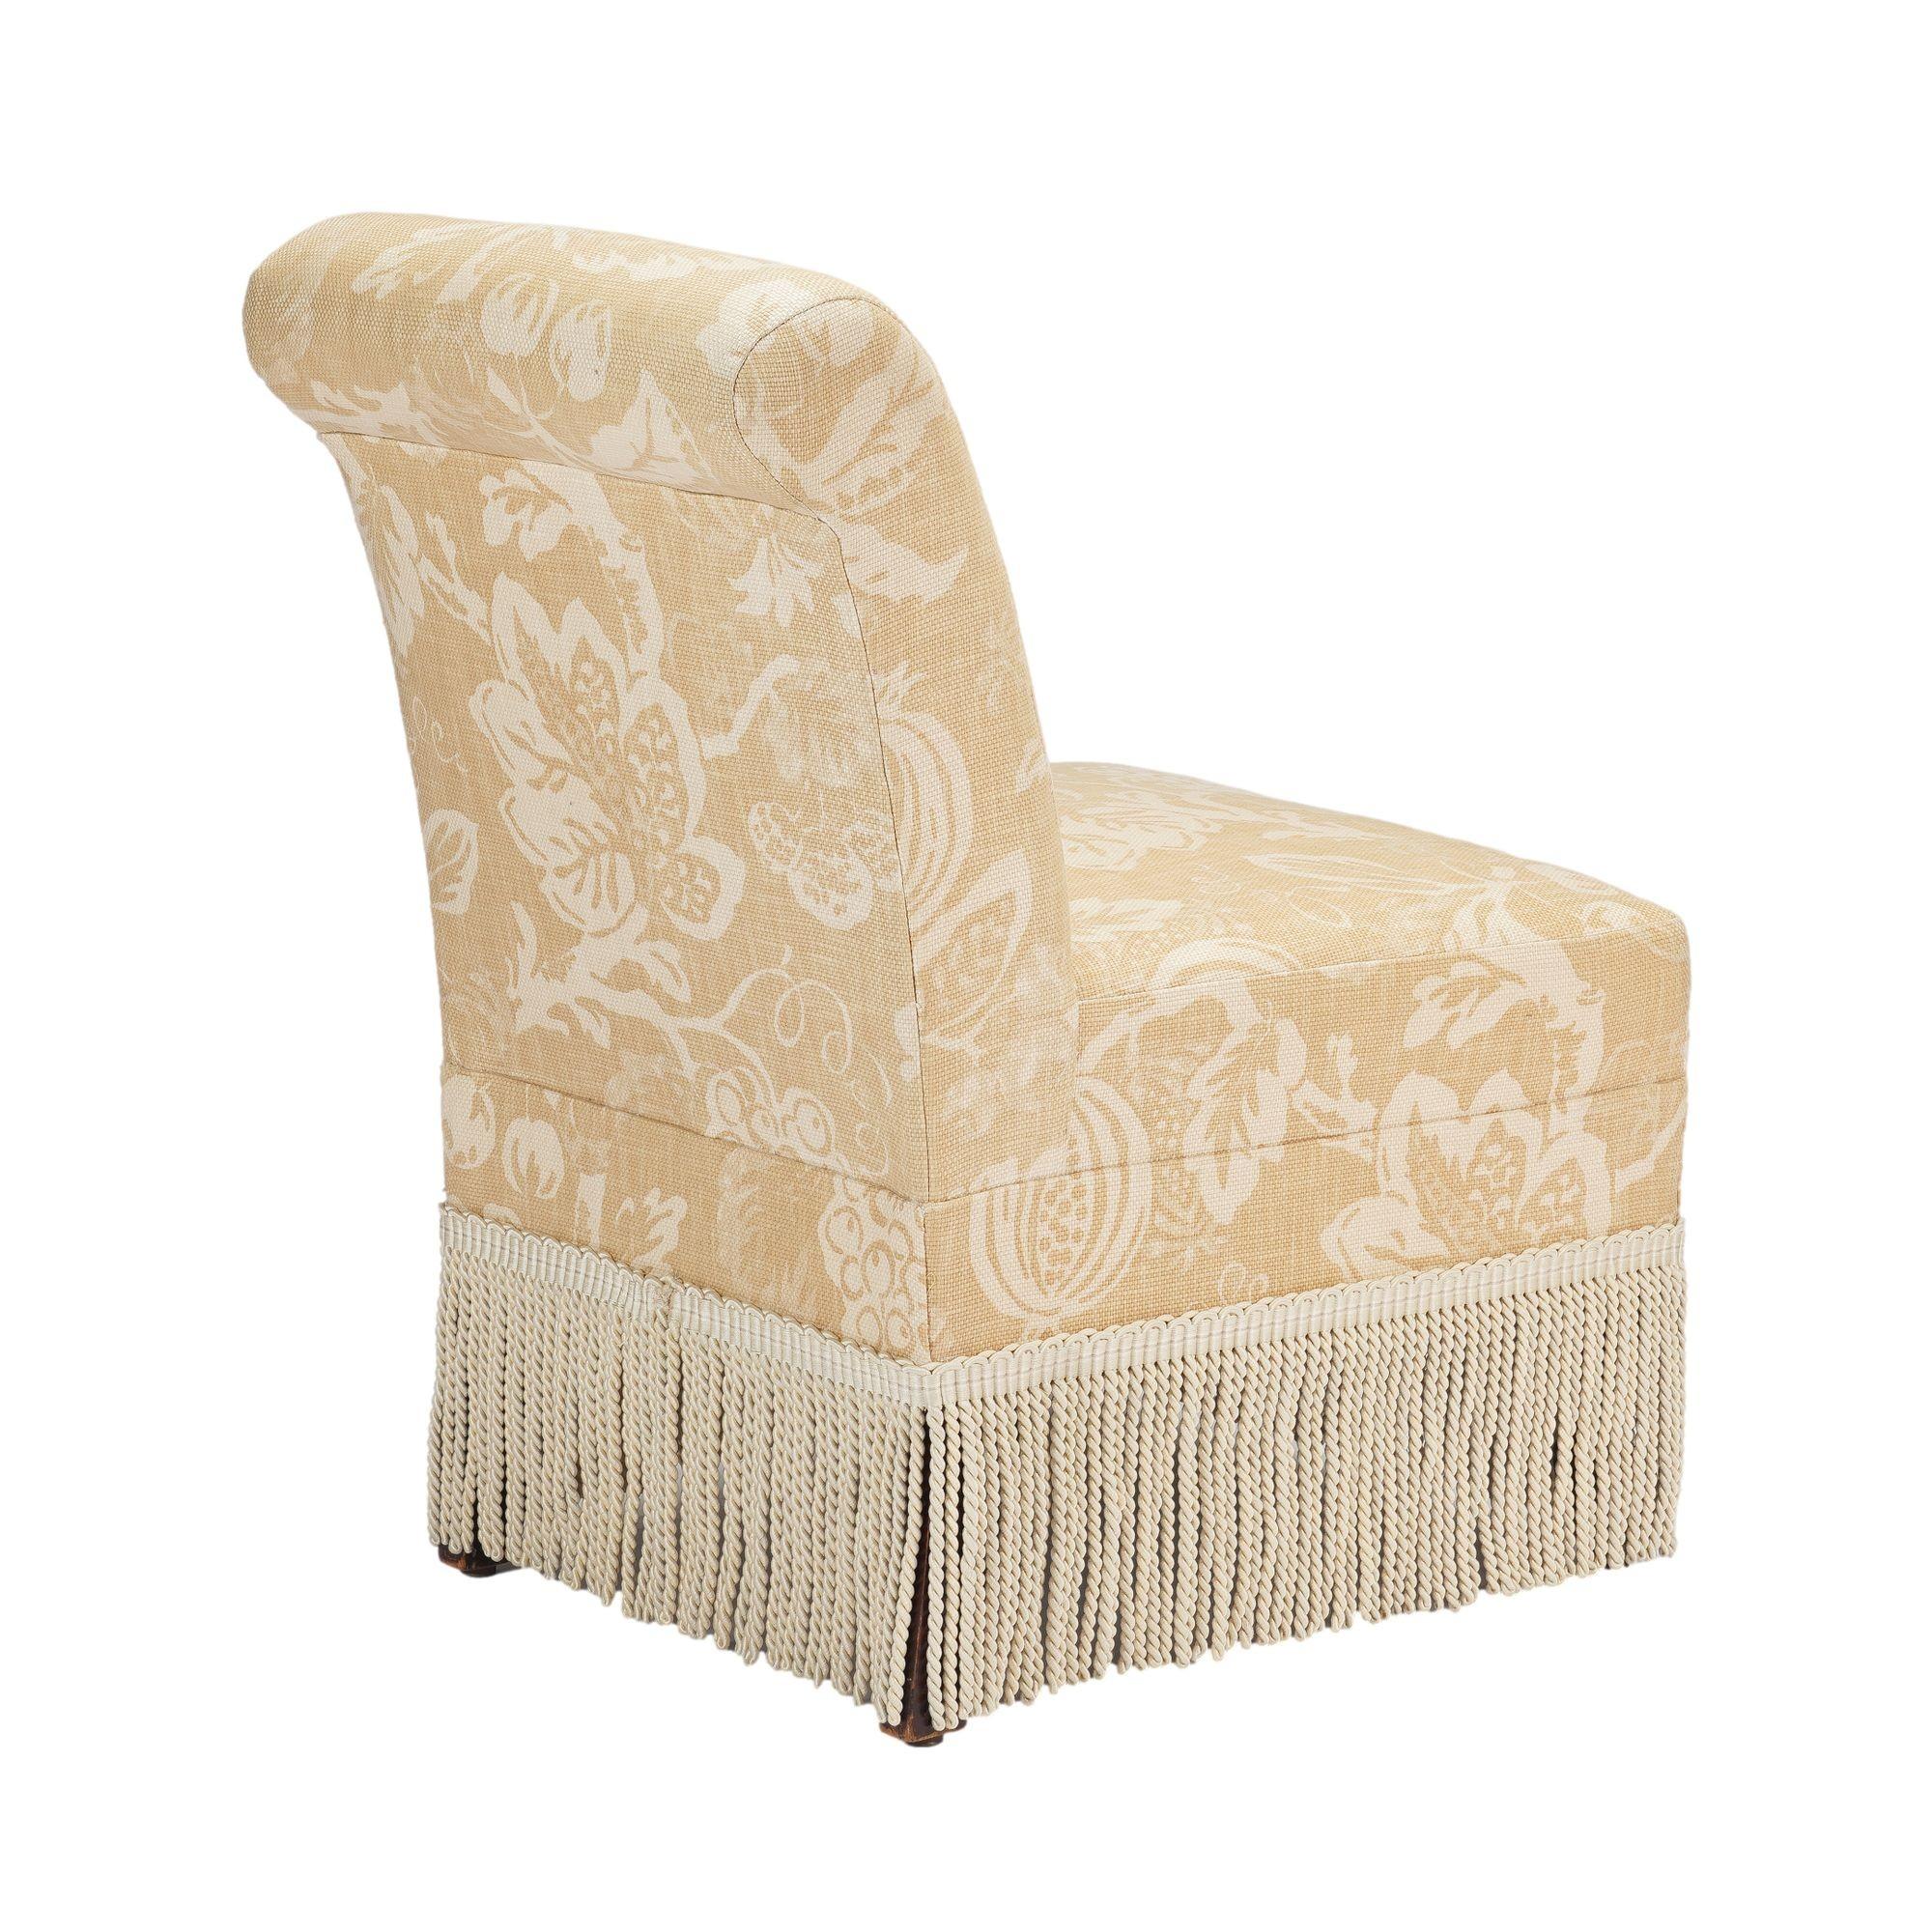 American Eastlake upholstered slipper chair on castors, c. 1880 For Sale 1